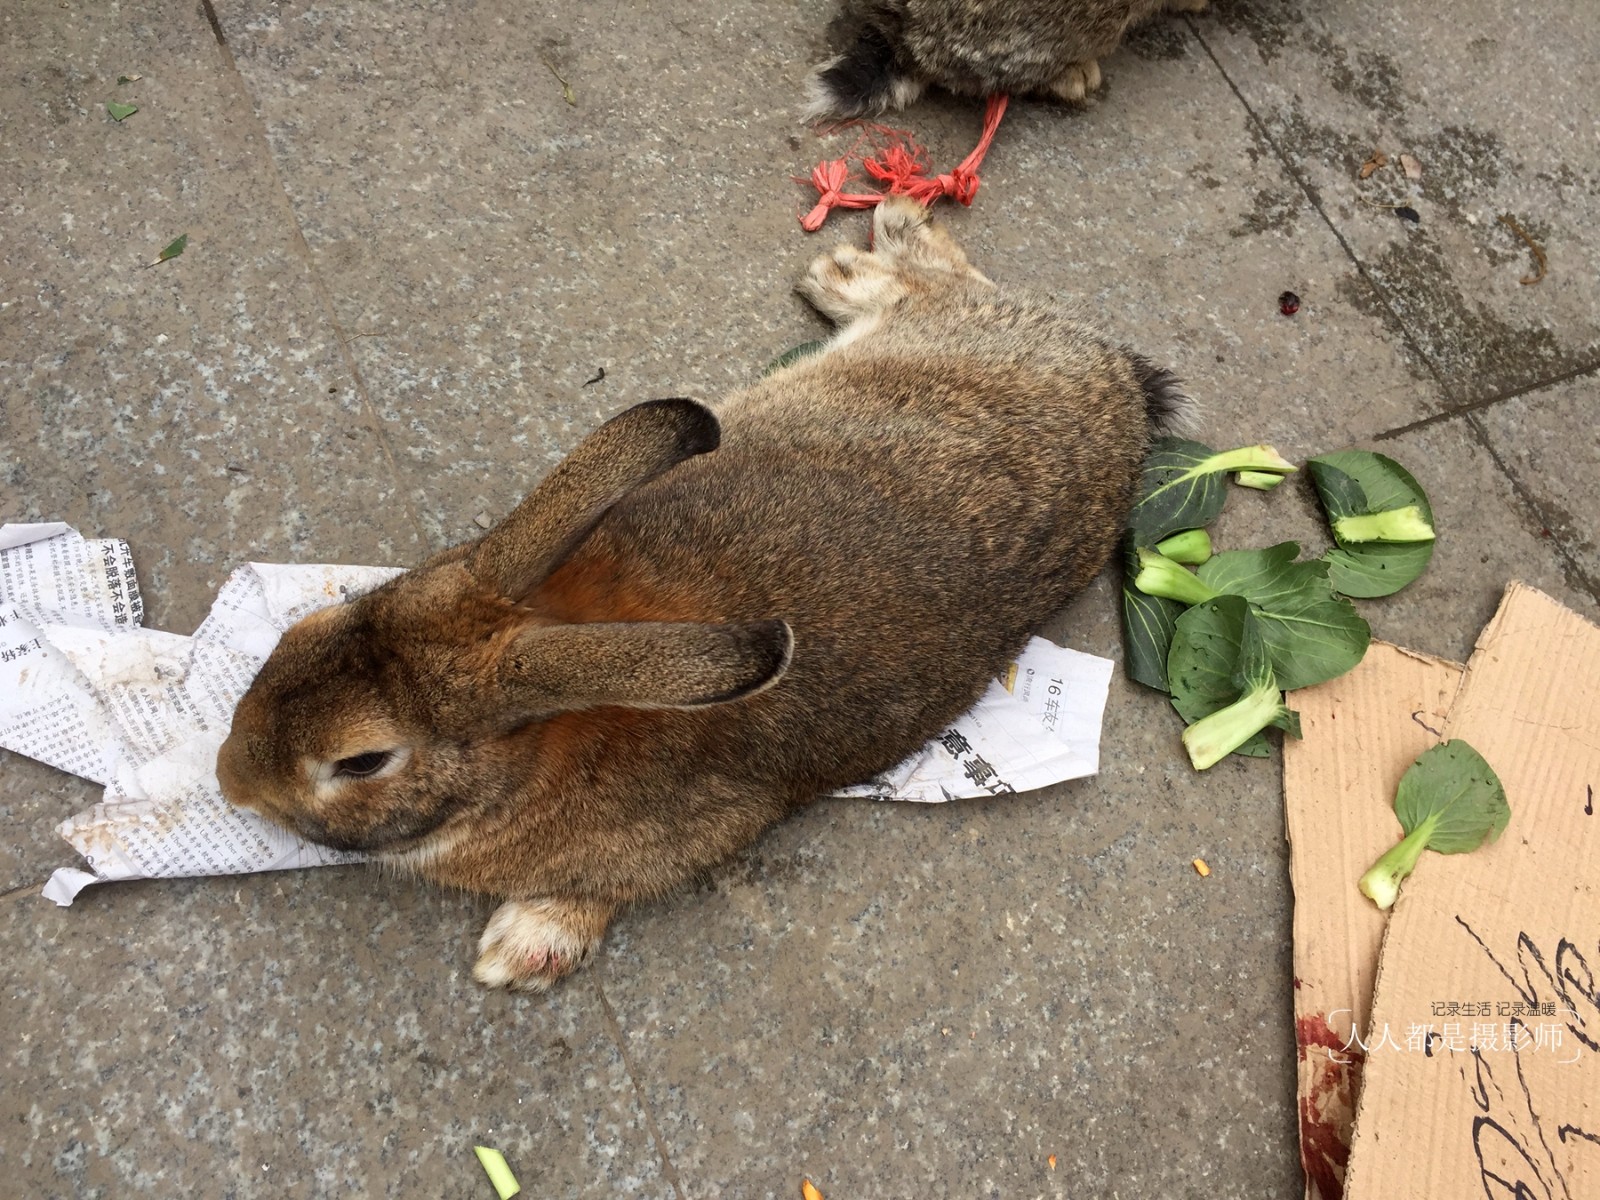 臺灣野兔逐草而居 只會躲不挖洞 山產店絕跡後野外重現生機 - 農傳媒